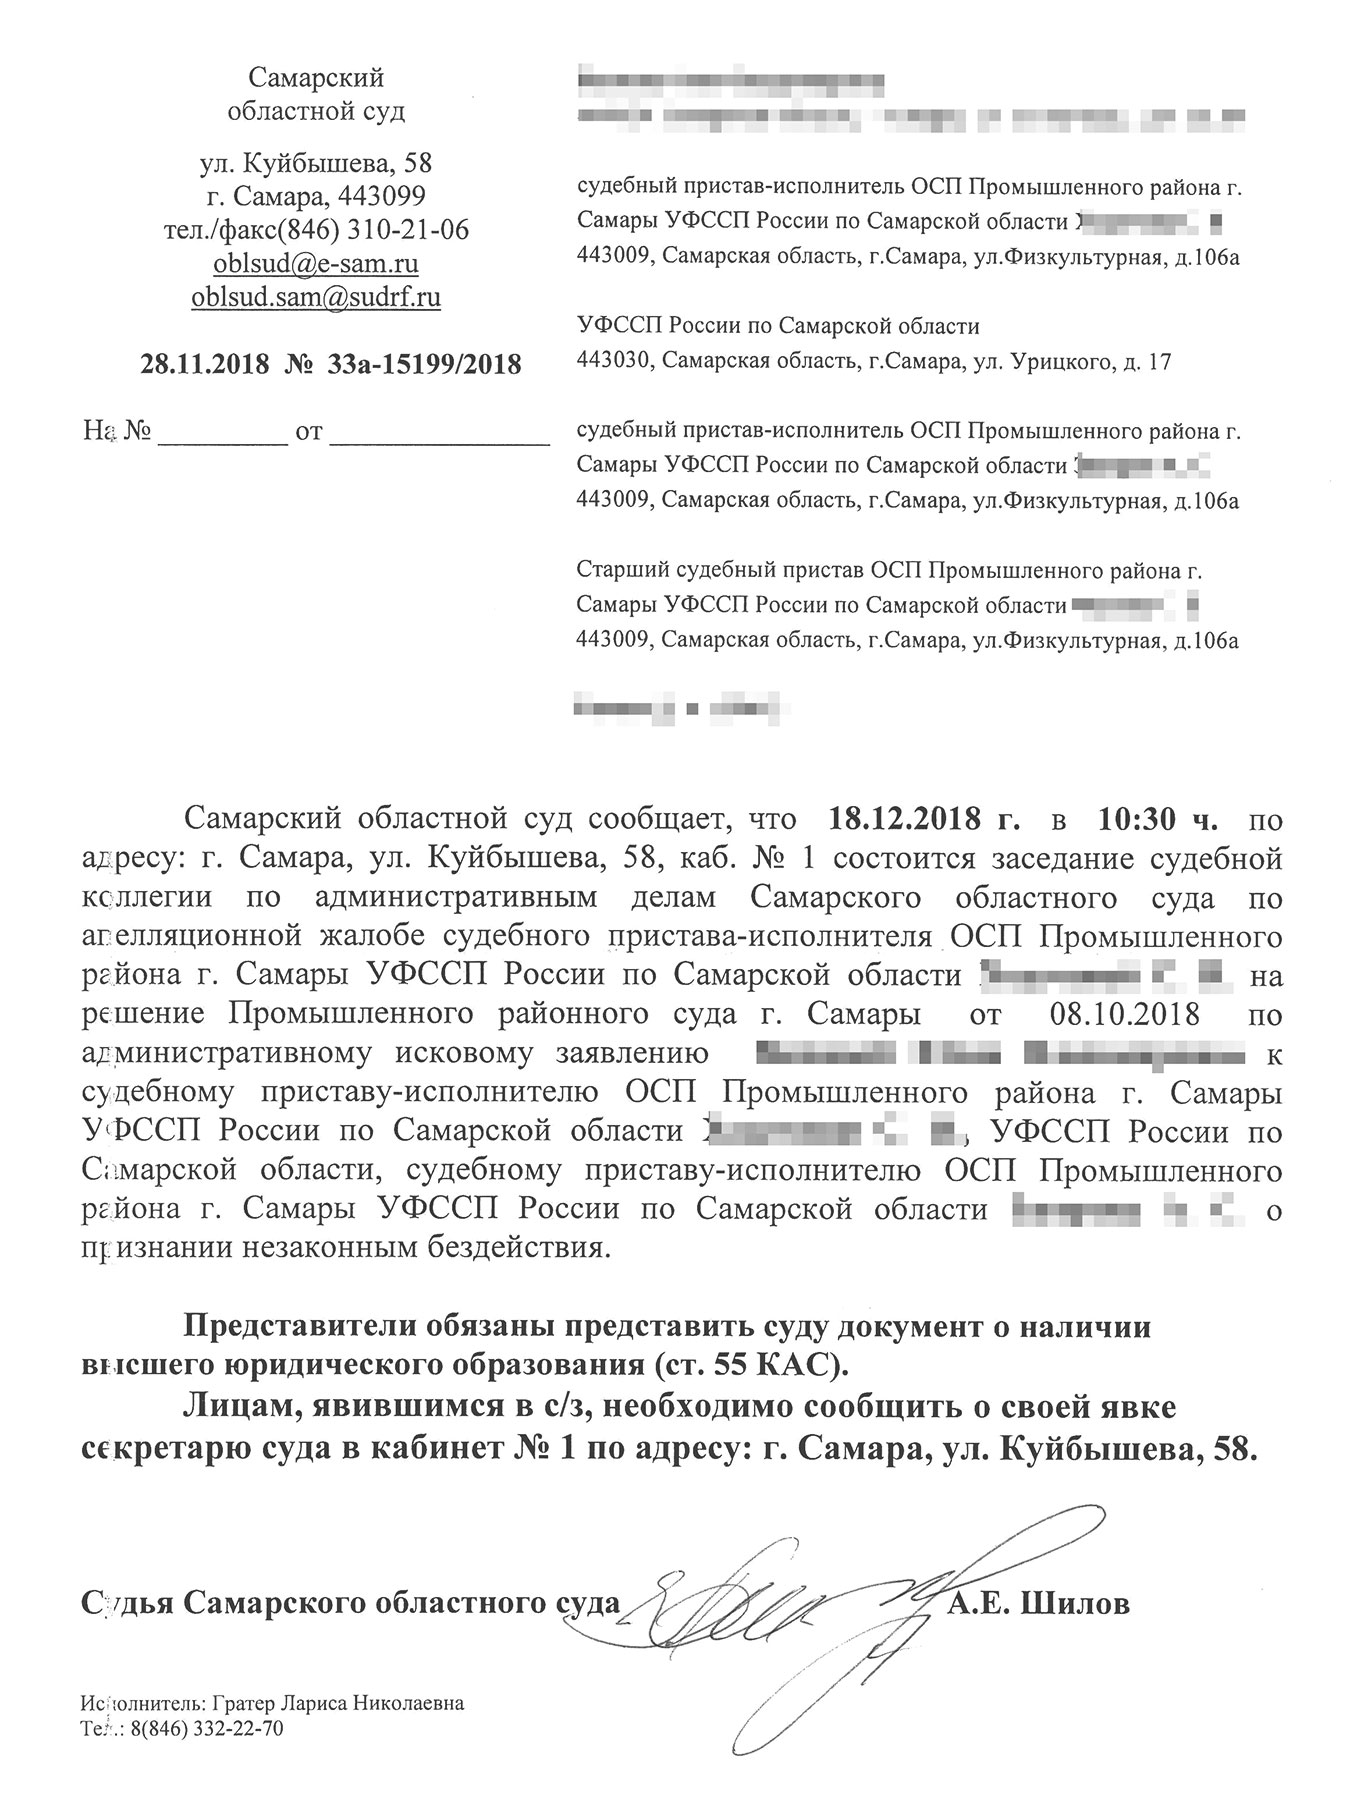 Областной суд уведомил Юлию, что будет рассматривать апелляционную жалобу 18 декабря 2018 года